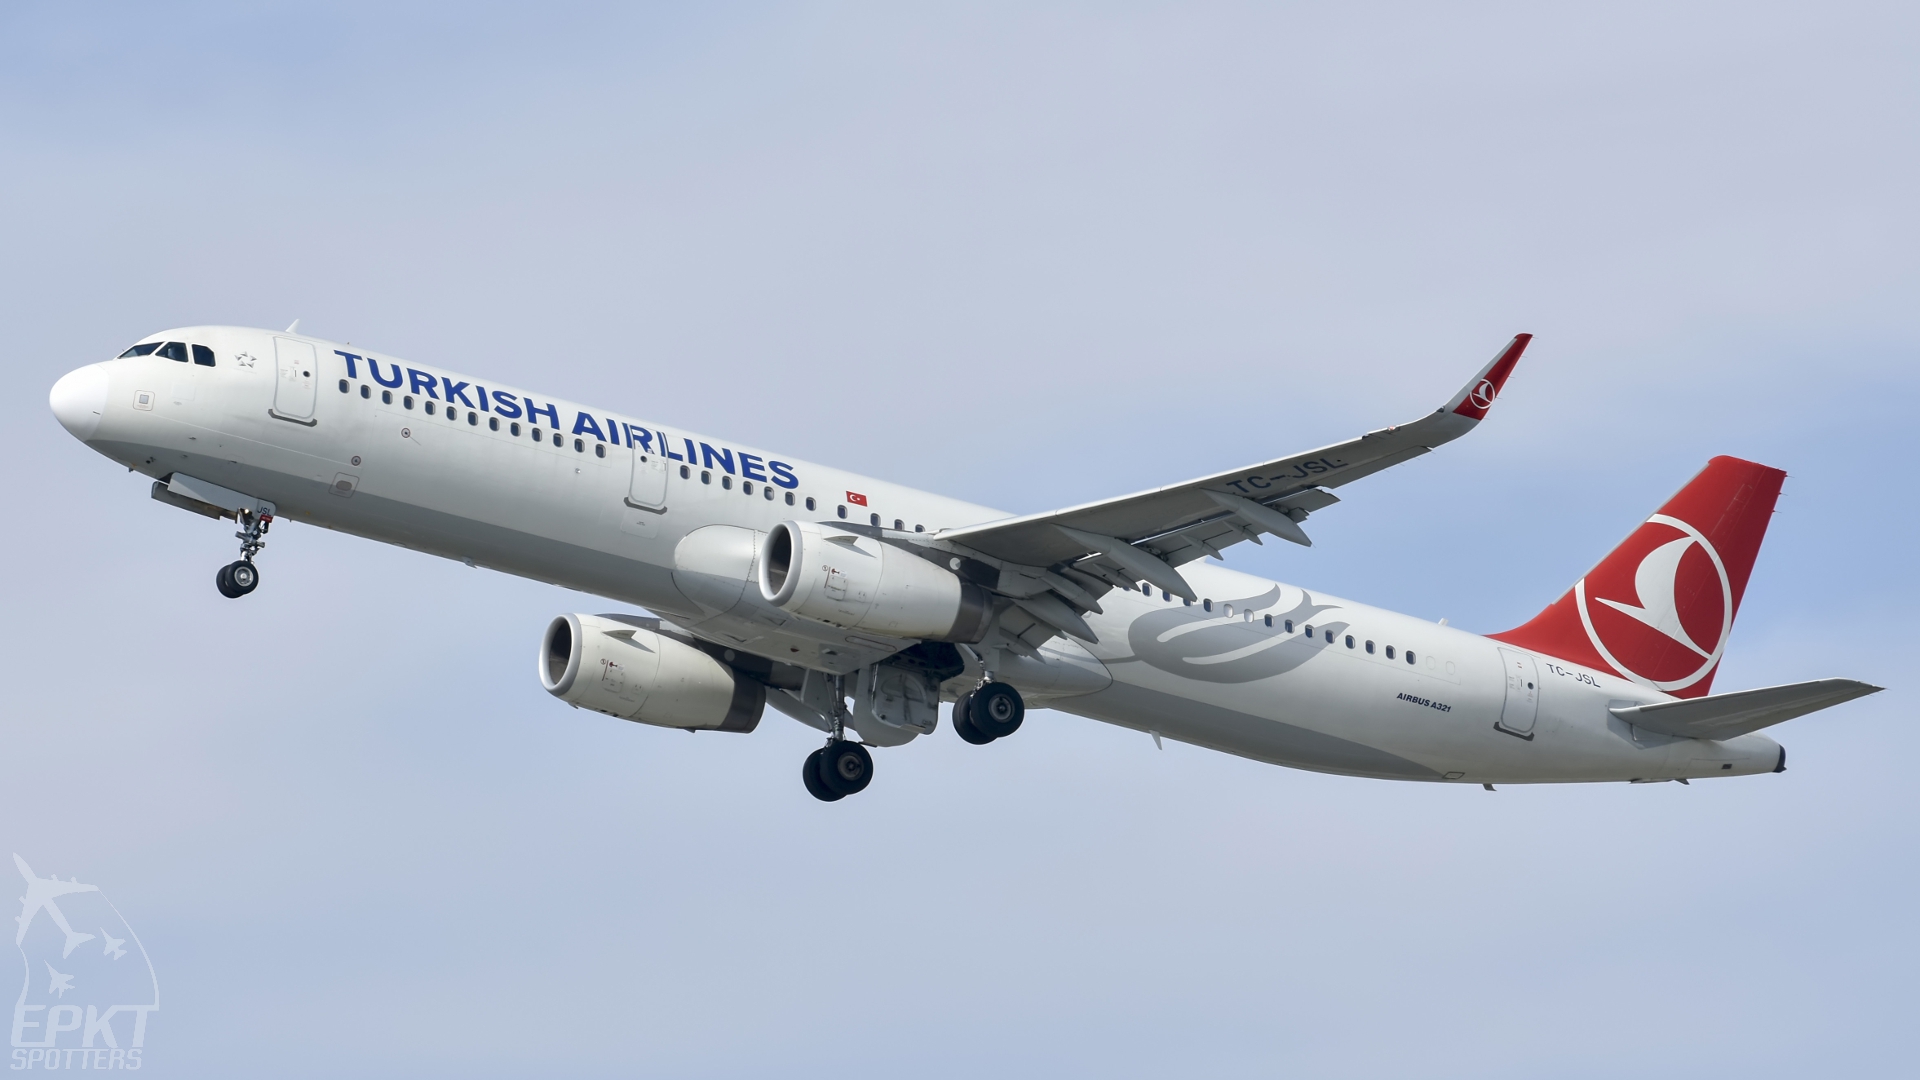 TC-JSL - Airbus A321 -231 (Turkish Airlines) / Schwechat - Vienna Austria [LOWW/VIE]